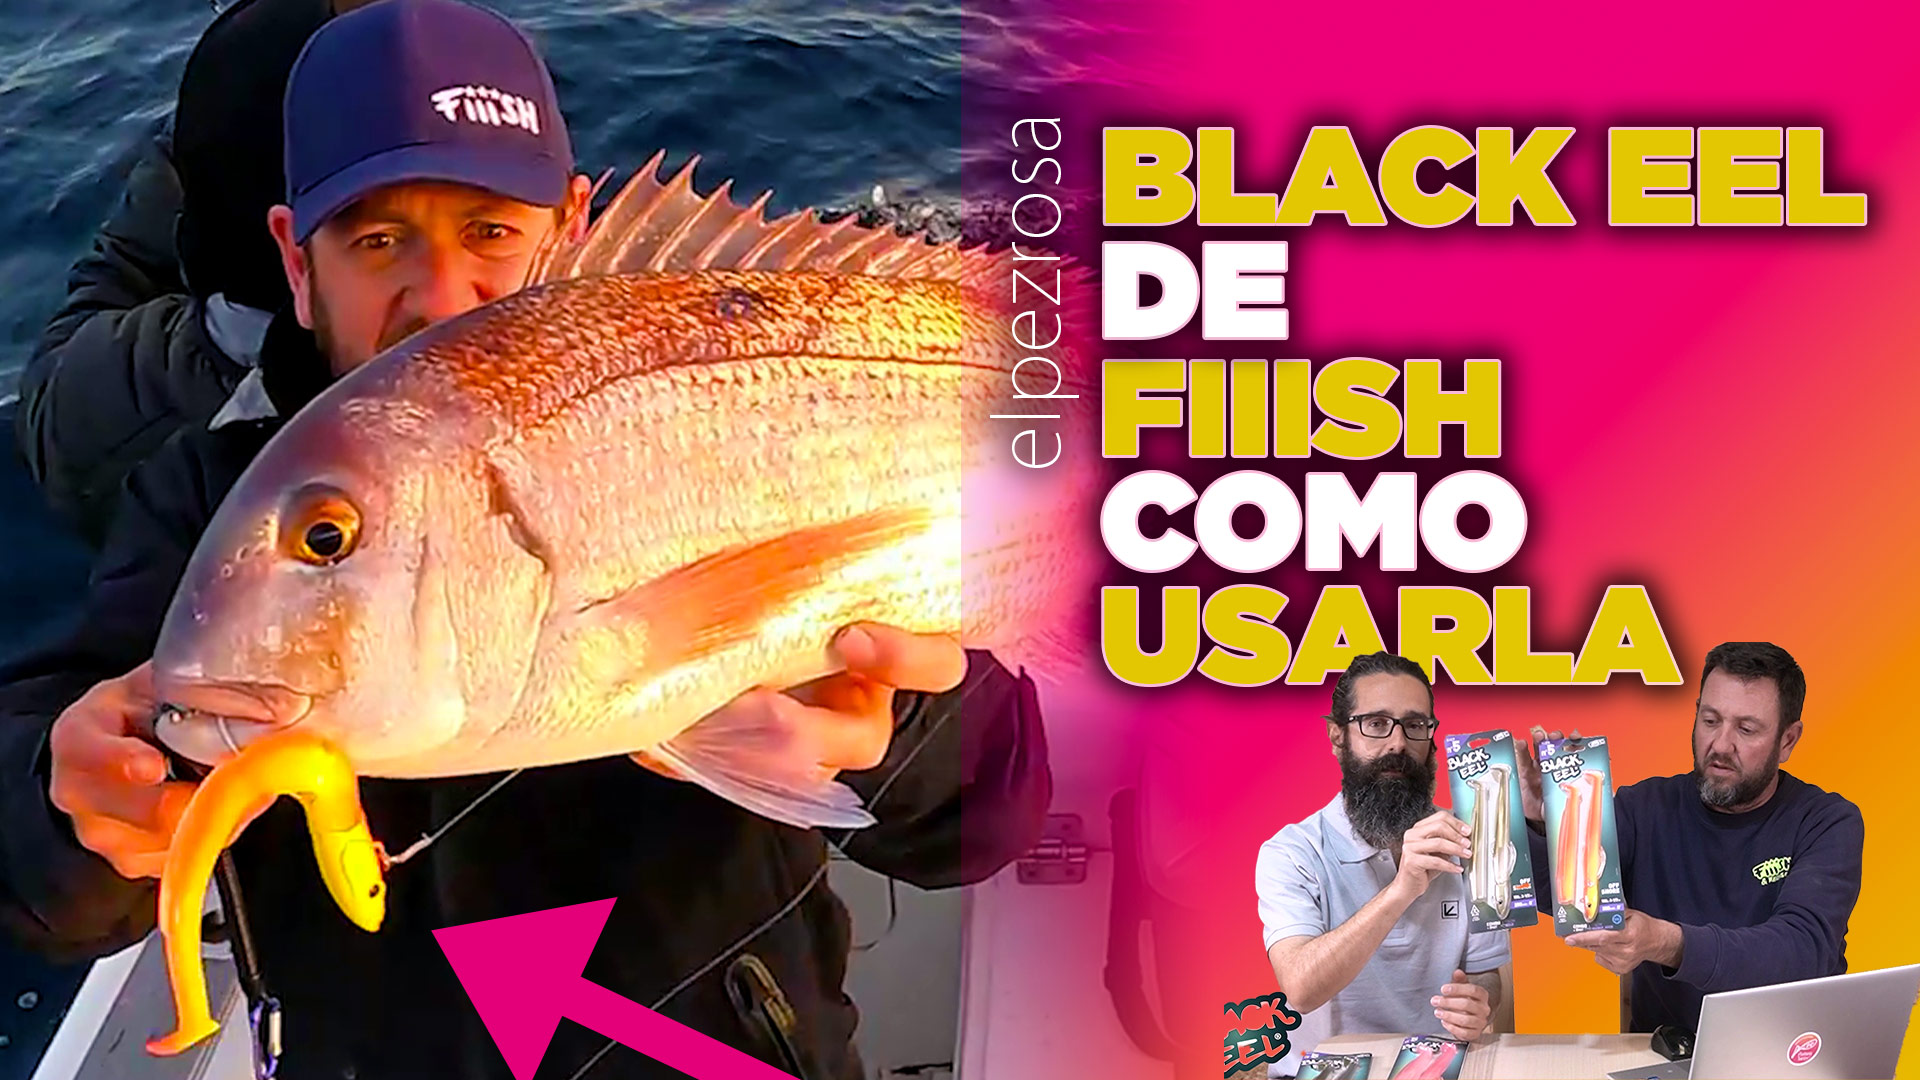 VIDEO | Black Eel de Fiiish, presentación de la gama y como utilizarla.